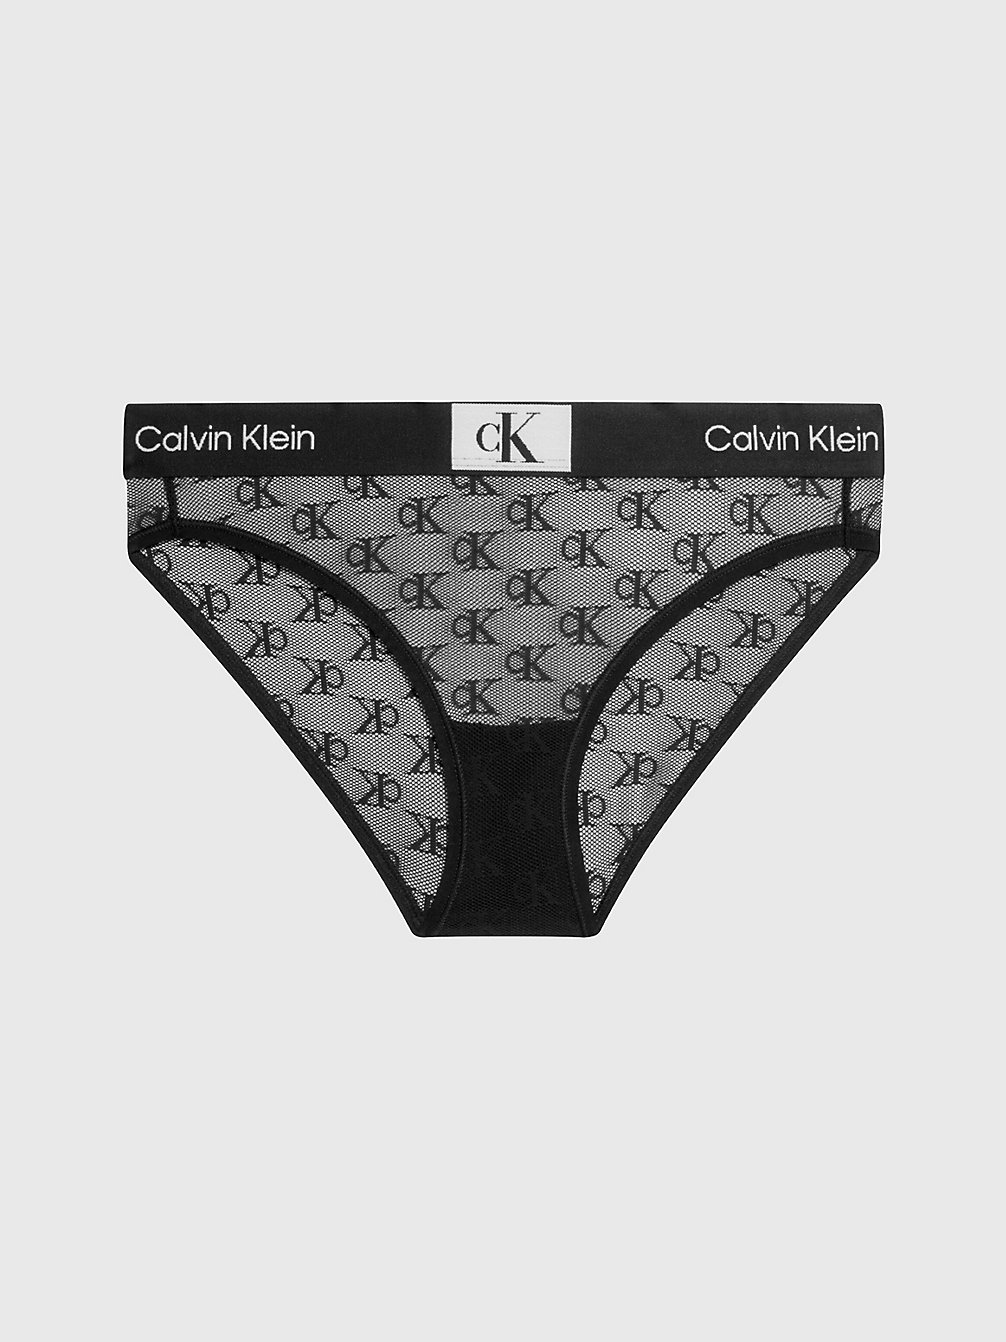 BLACK Slips Mit Spitzenbesatz - Ck96 undefined Damen Calvin Klein